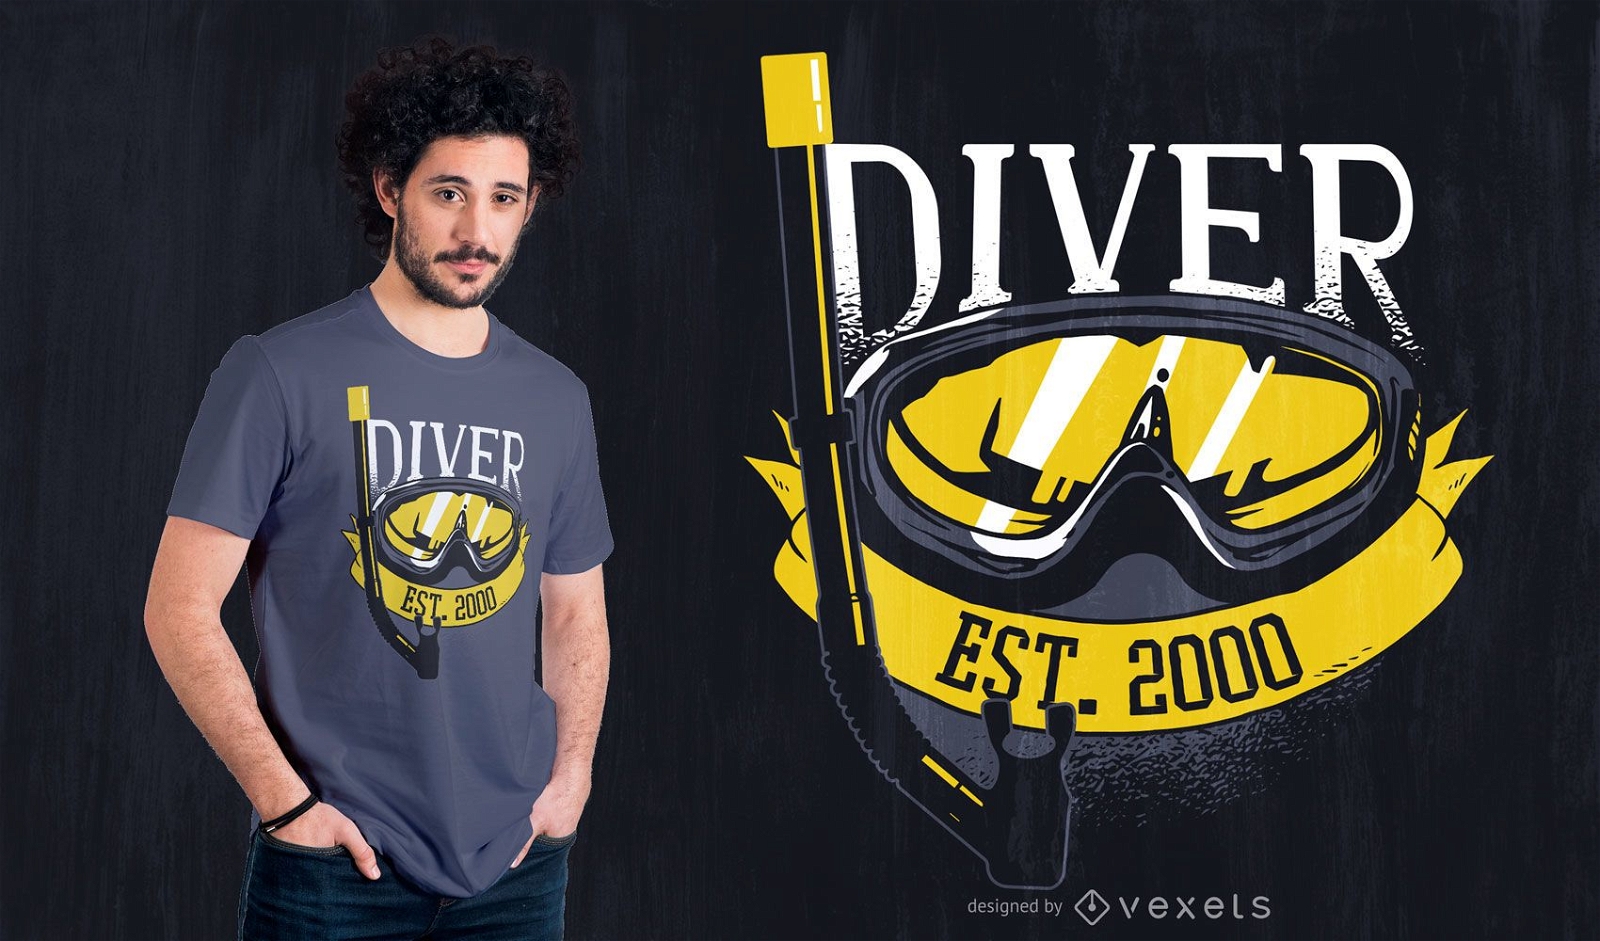 Diver Since 2000 T-shirt Design